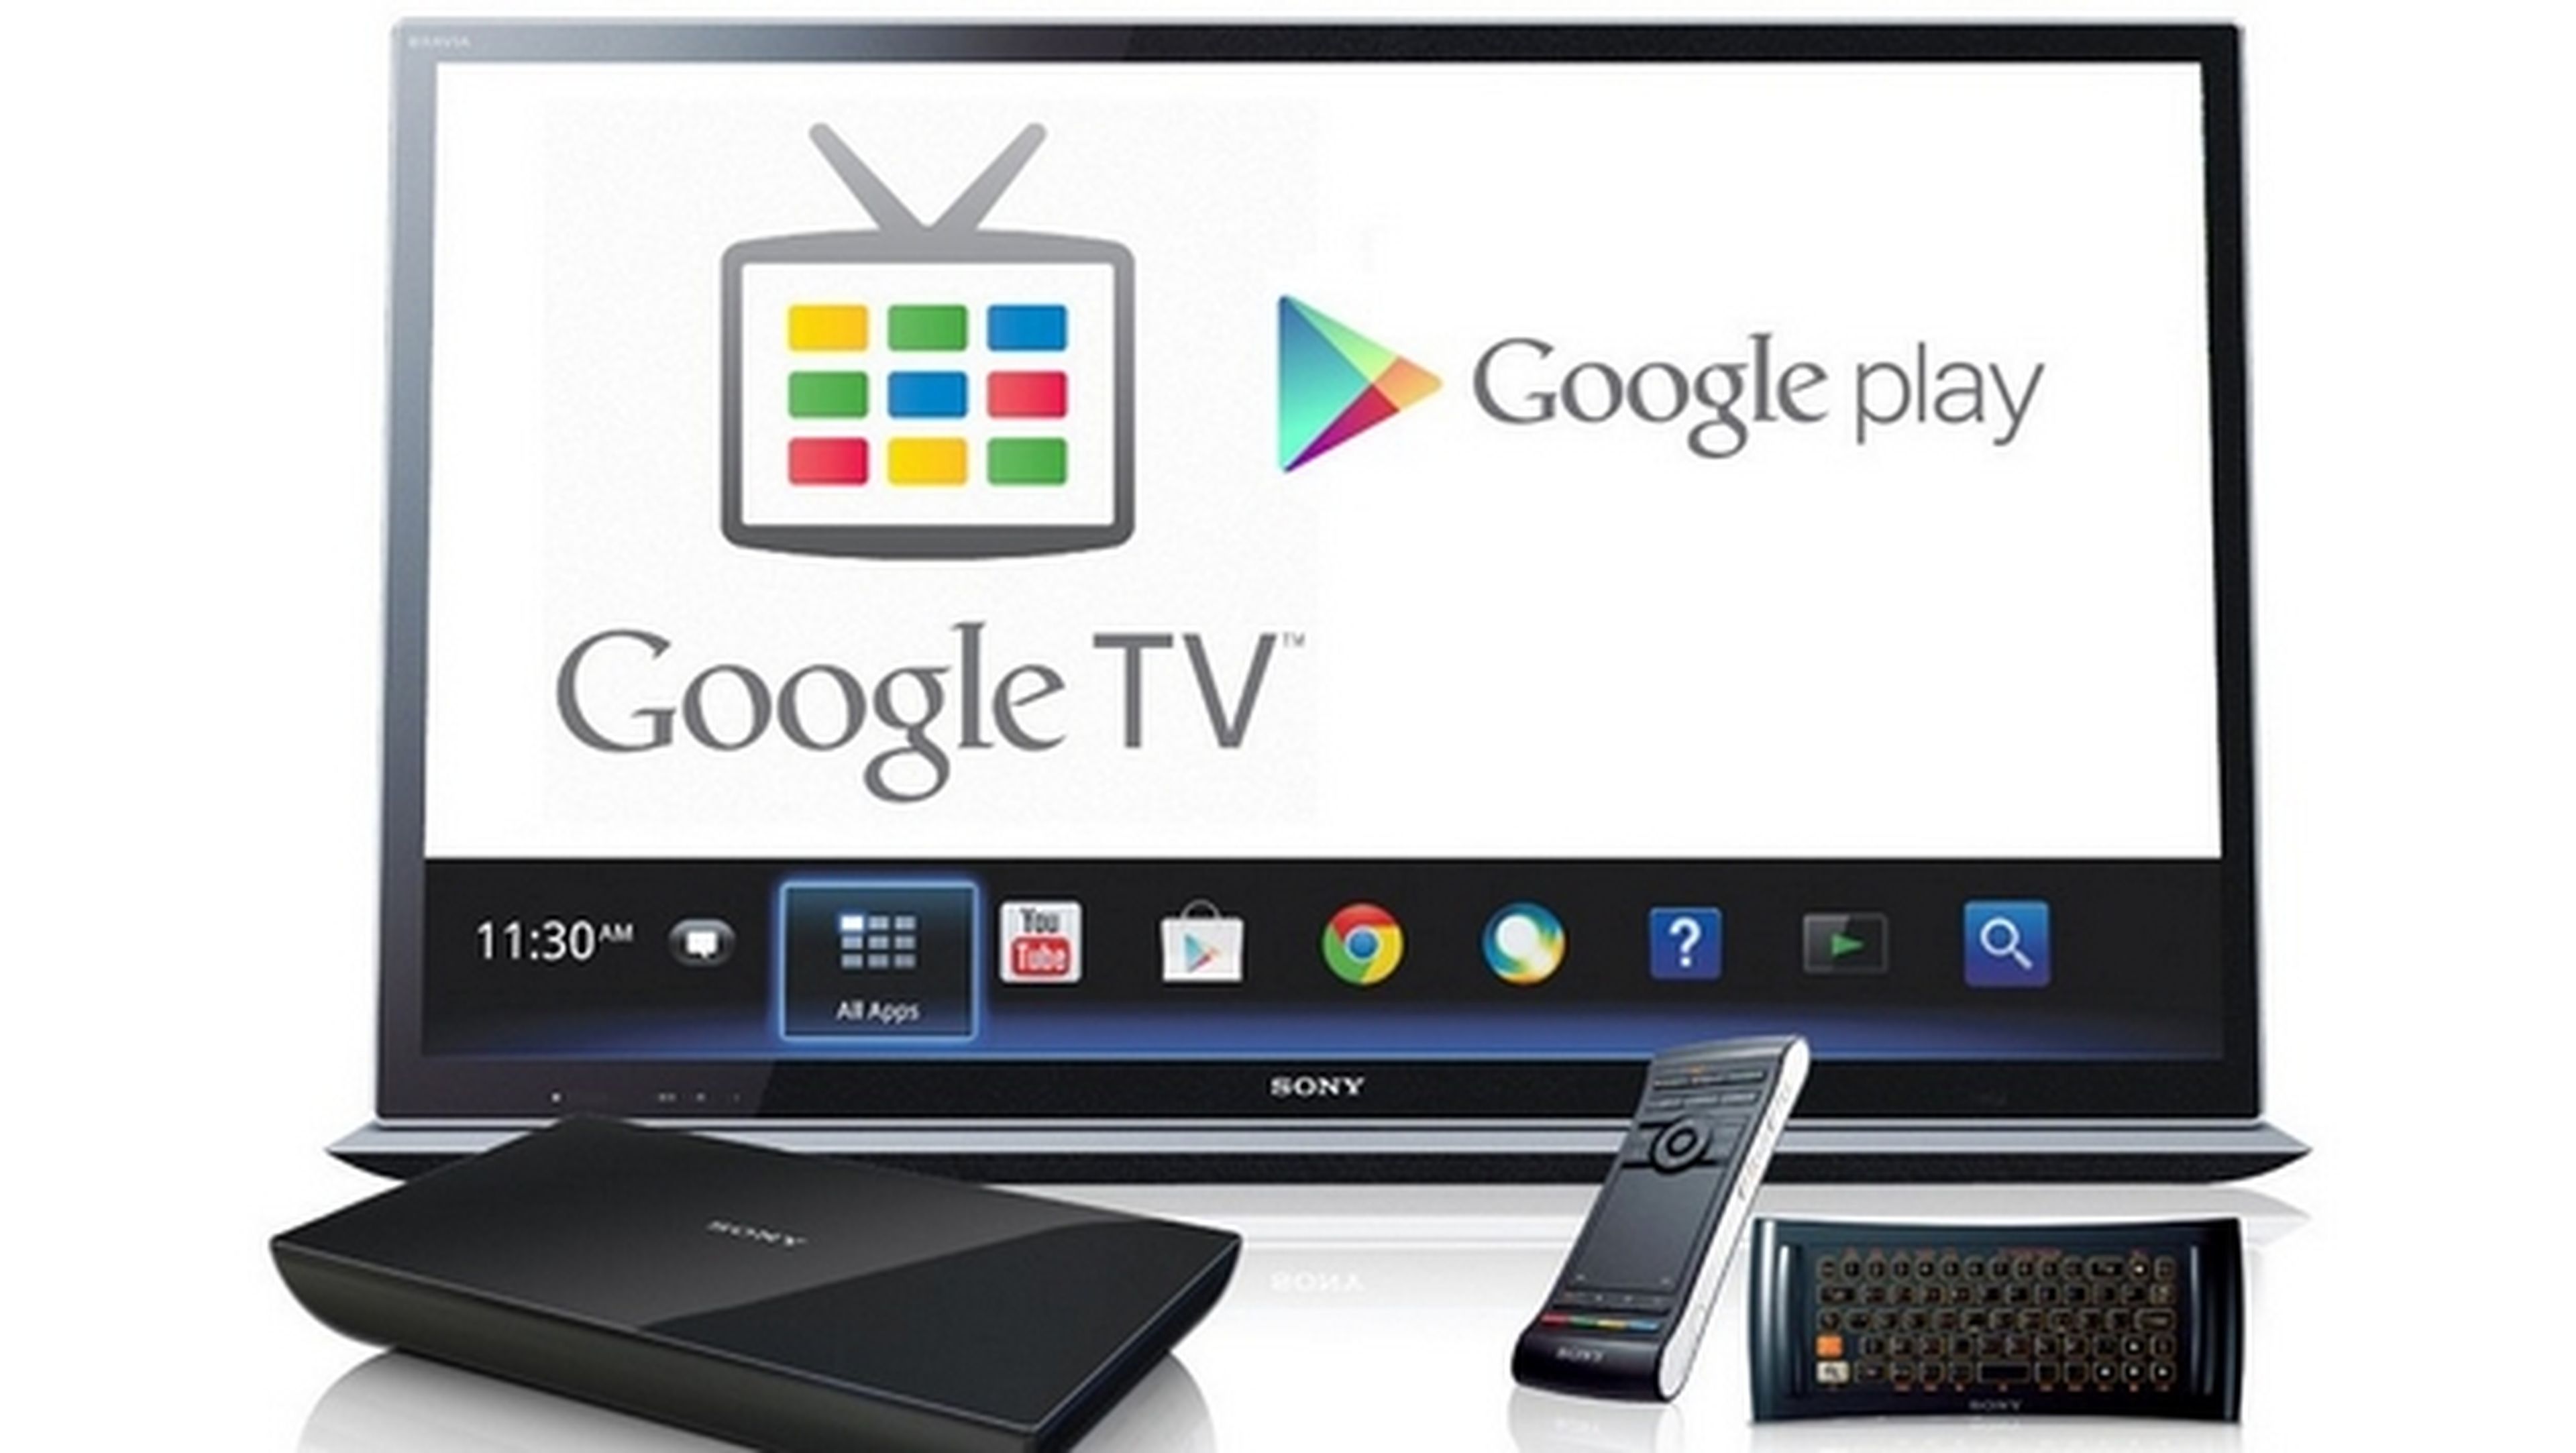 Asus Nexus Player, ¿el Smart TV de Google con Android L?